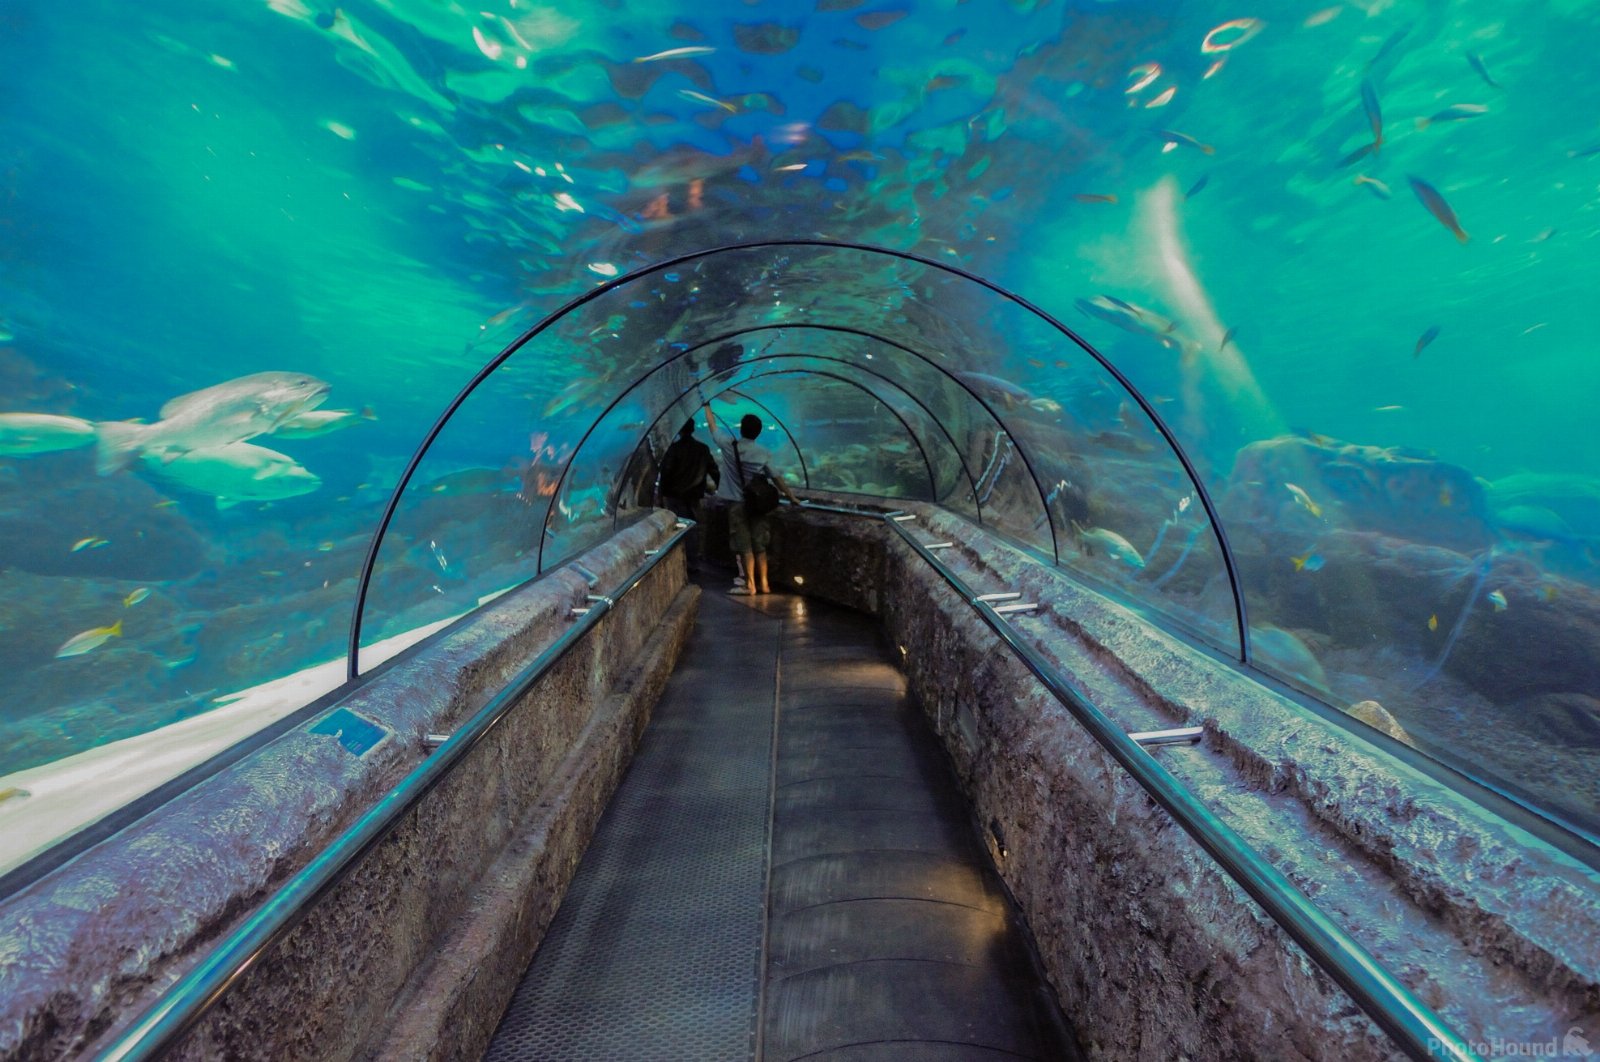 Jakarta Aquarium photo spot, Kecamatan Grogol petamburan